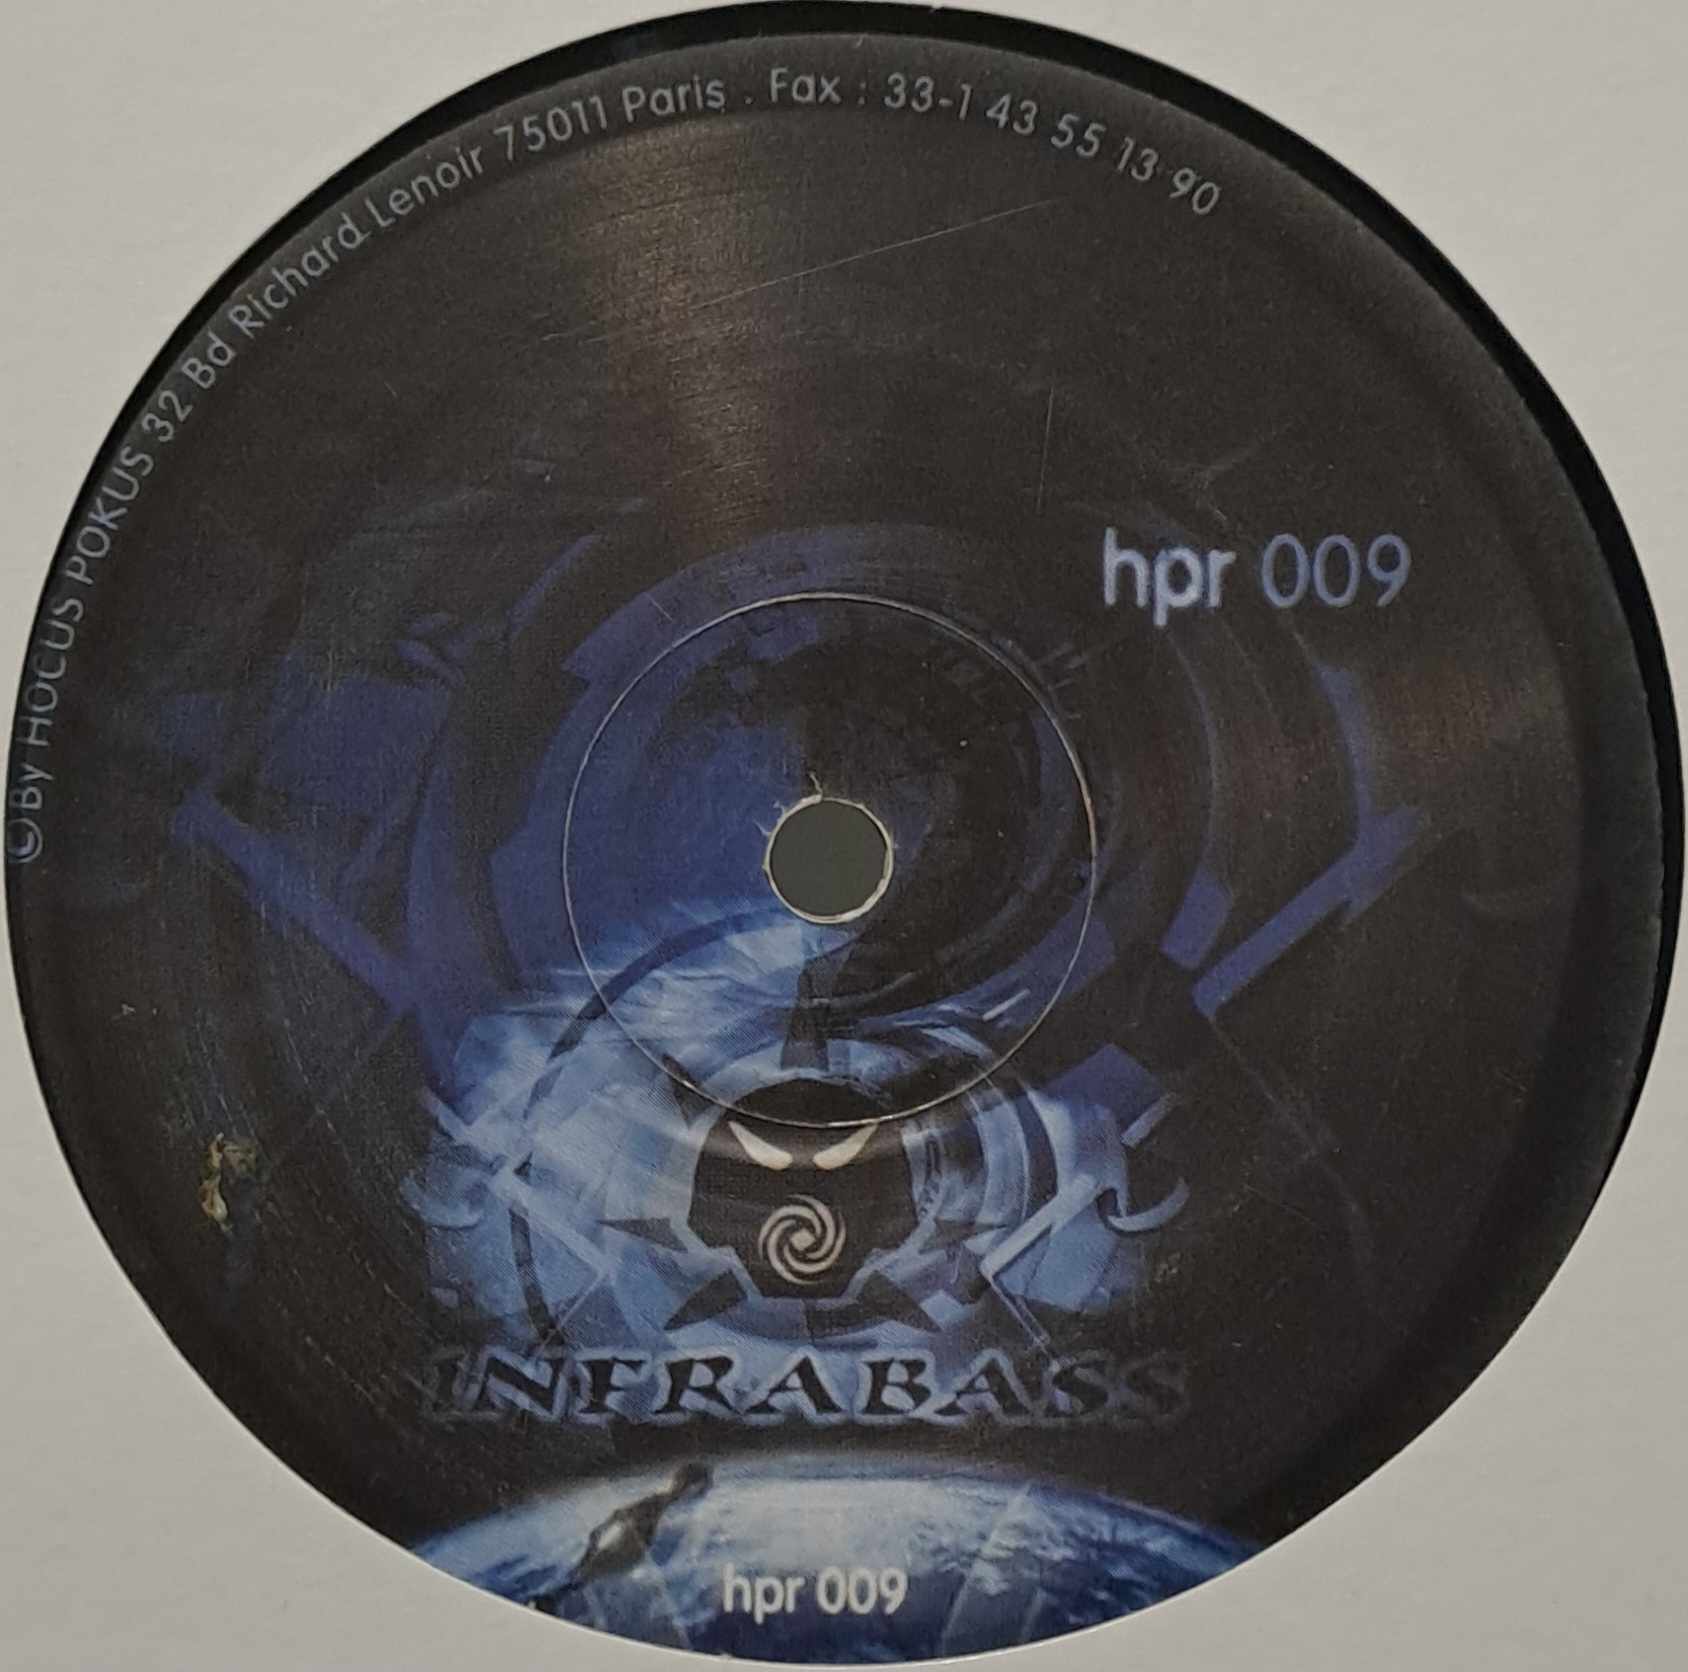 Hokus Pokus 009 - vinyle freetekno